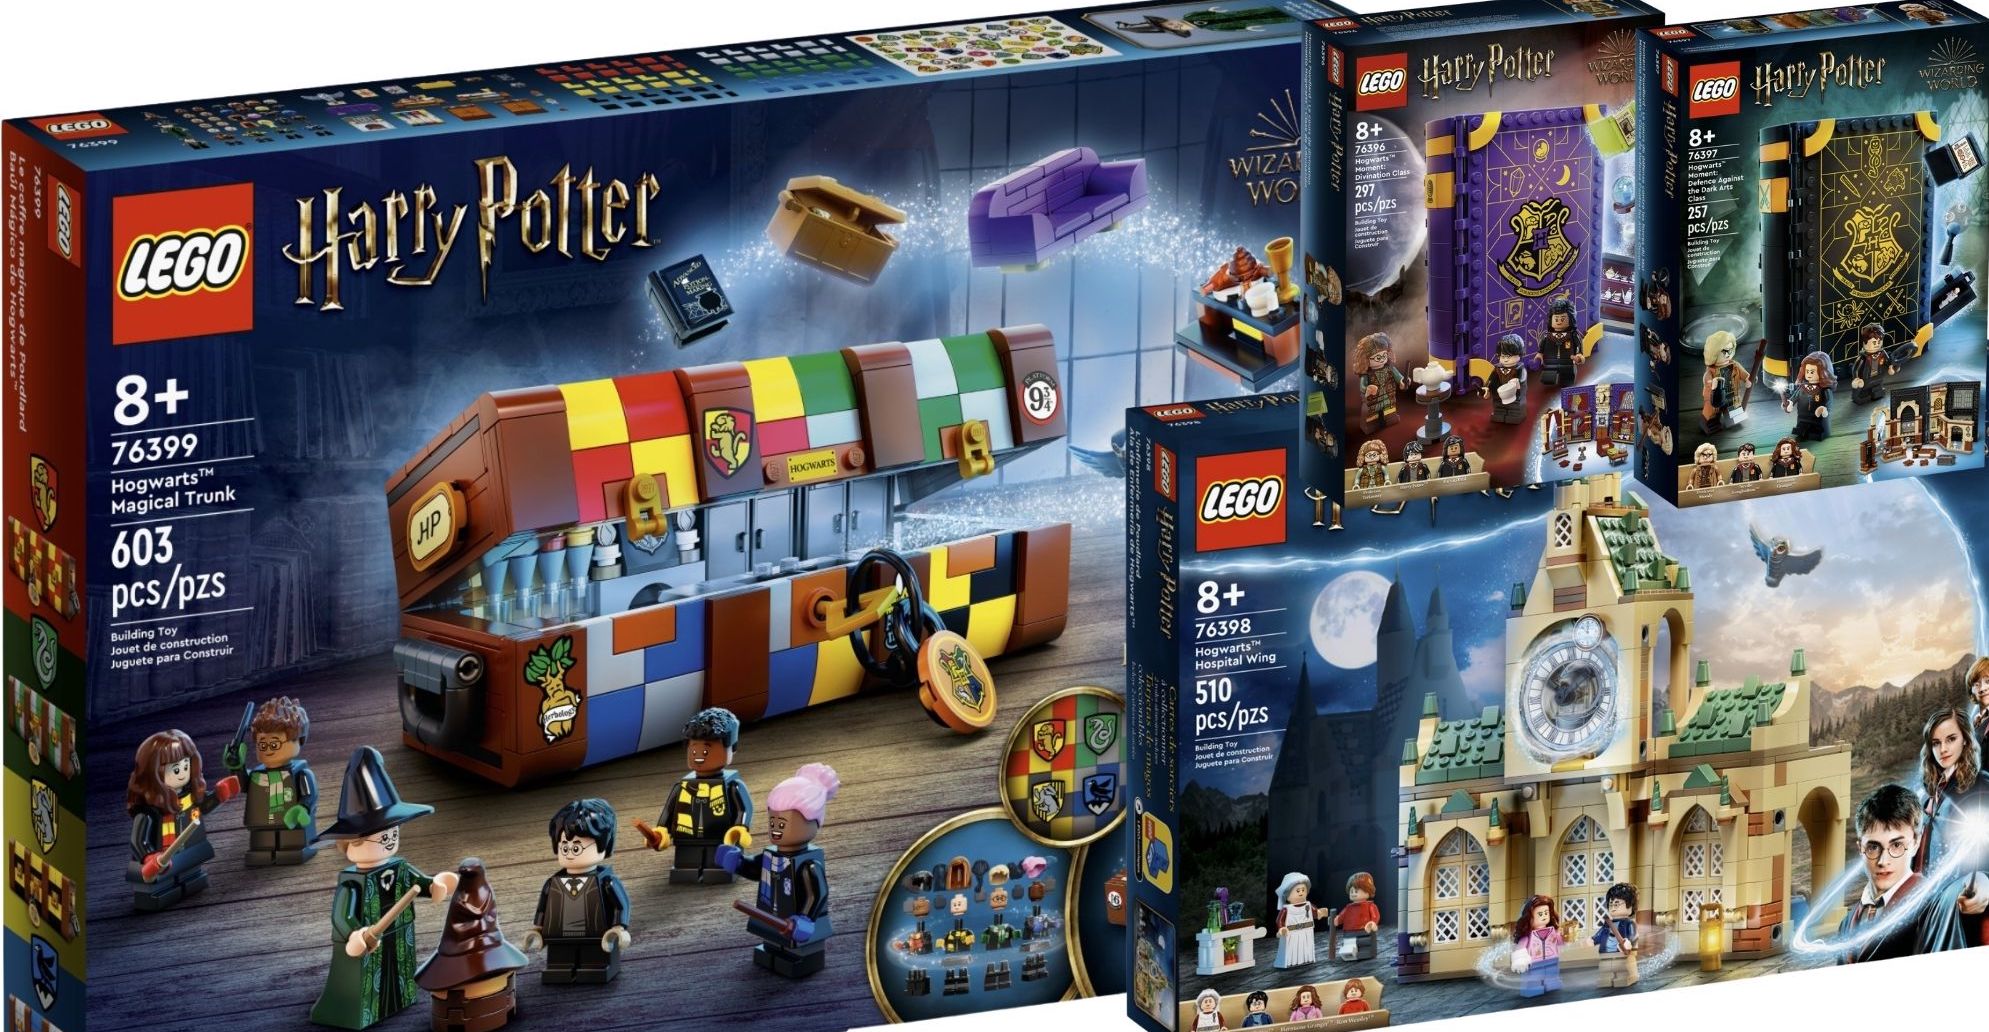 Ufficializzati nuovi set LEGO Harry Potter disponibili dal 1 Marzo - Il  Mastro Costruttore